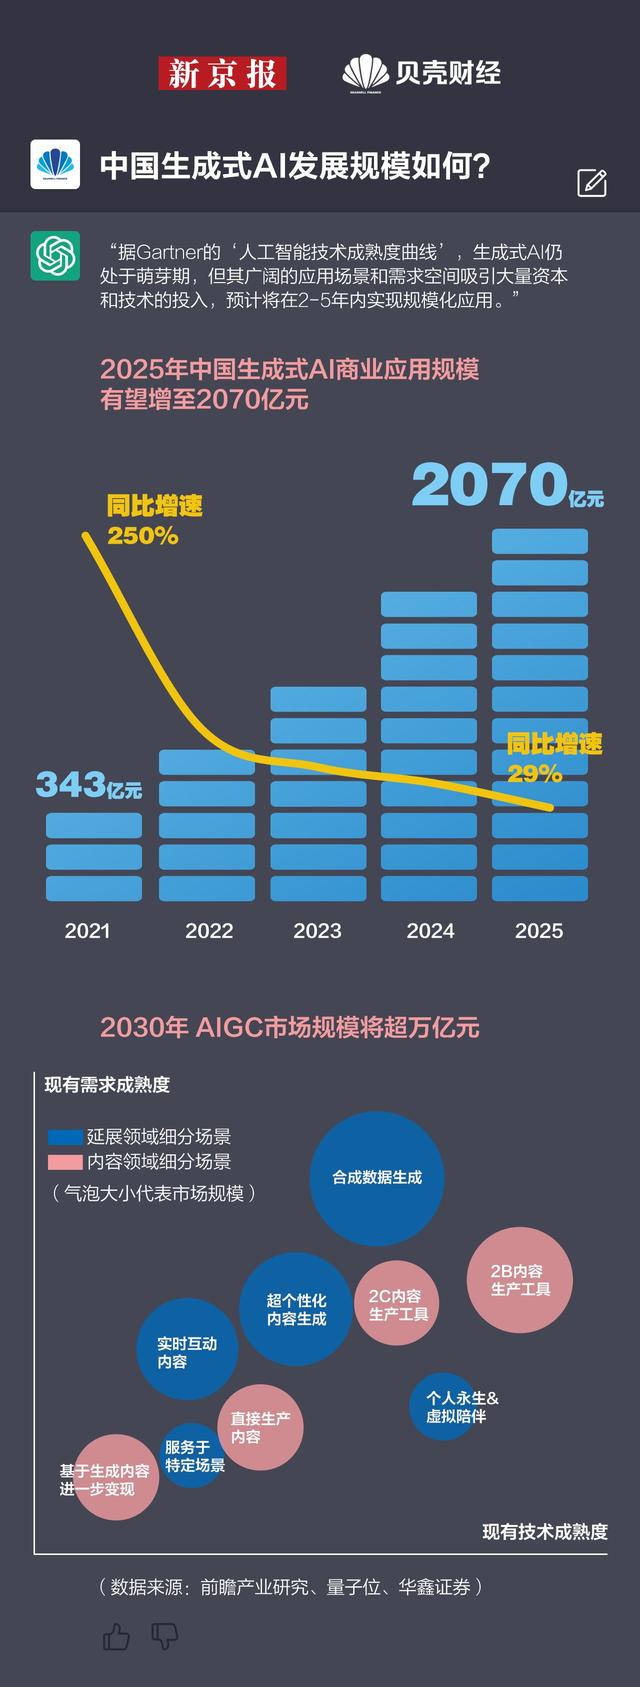 中国生成式AI商业应用规模将至2070亿元.jpeg